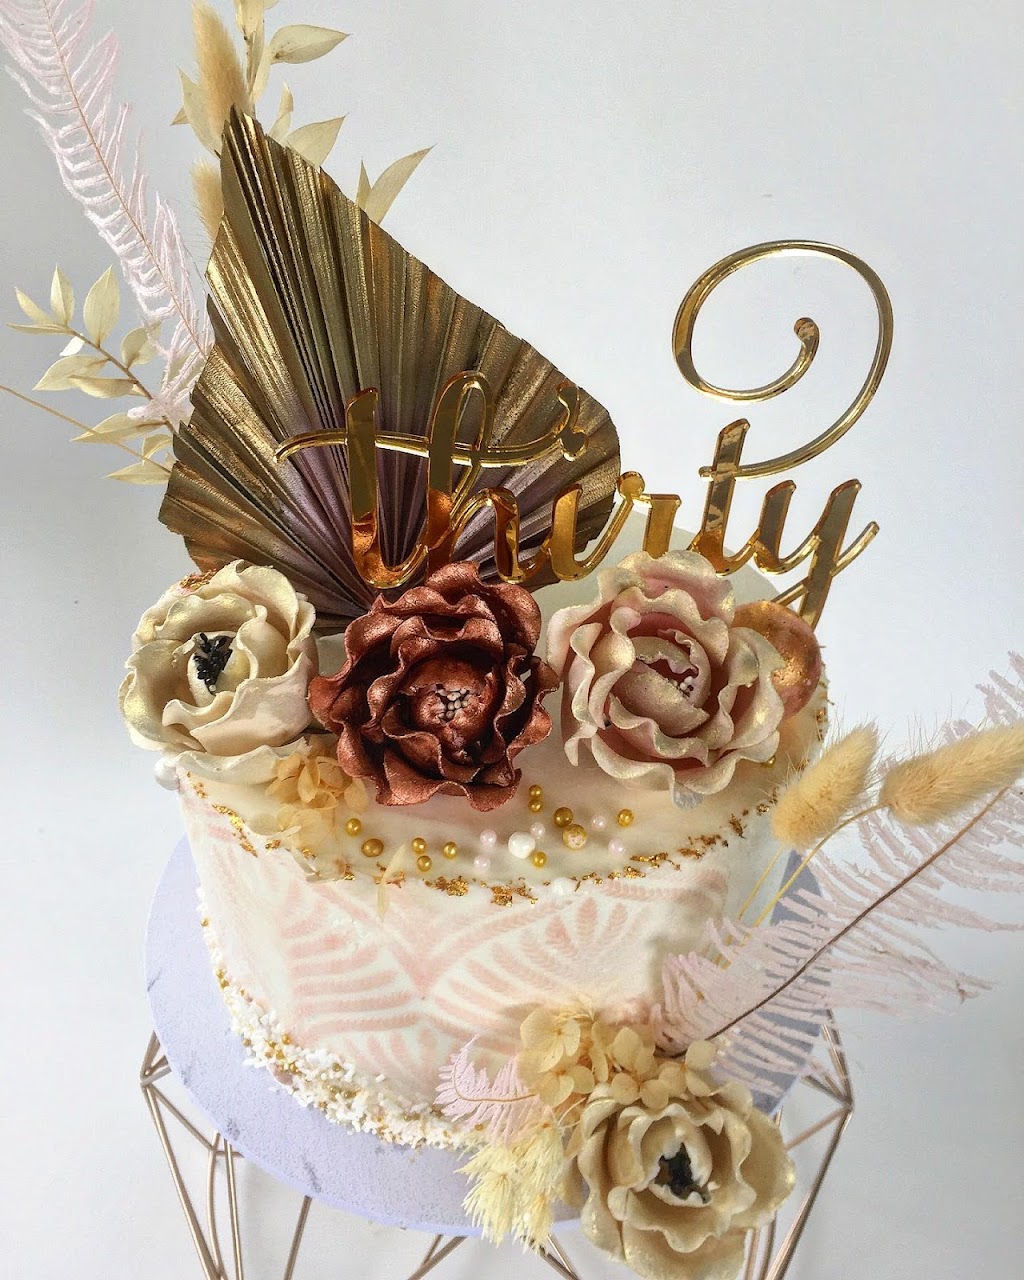 Lovely Cakes By Denise | bakery | 388 Adelaide Park Rd, Adelaide Park QLD 4703, Australia | 0429229990 OR +61 429 229 990